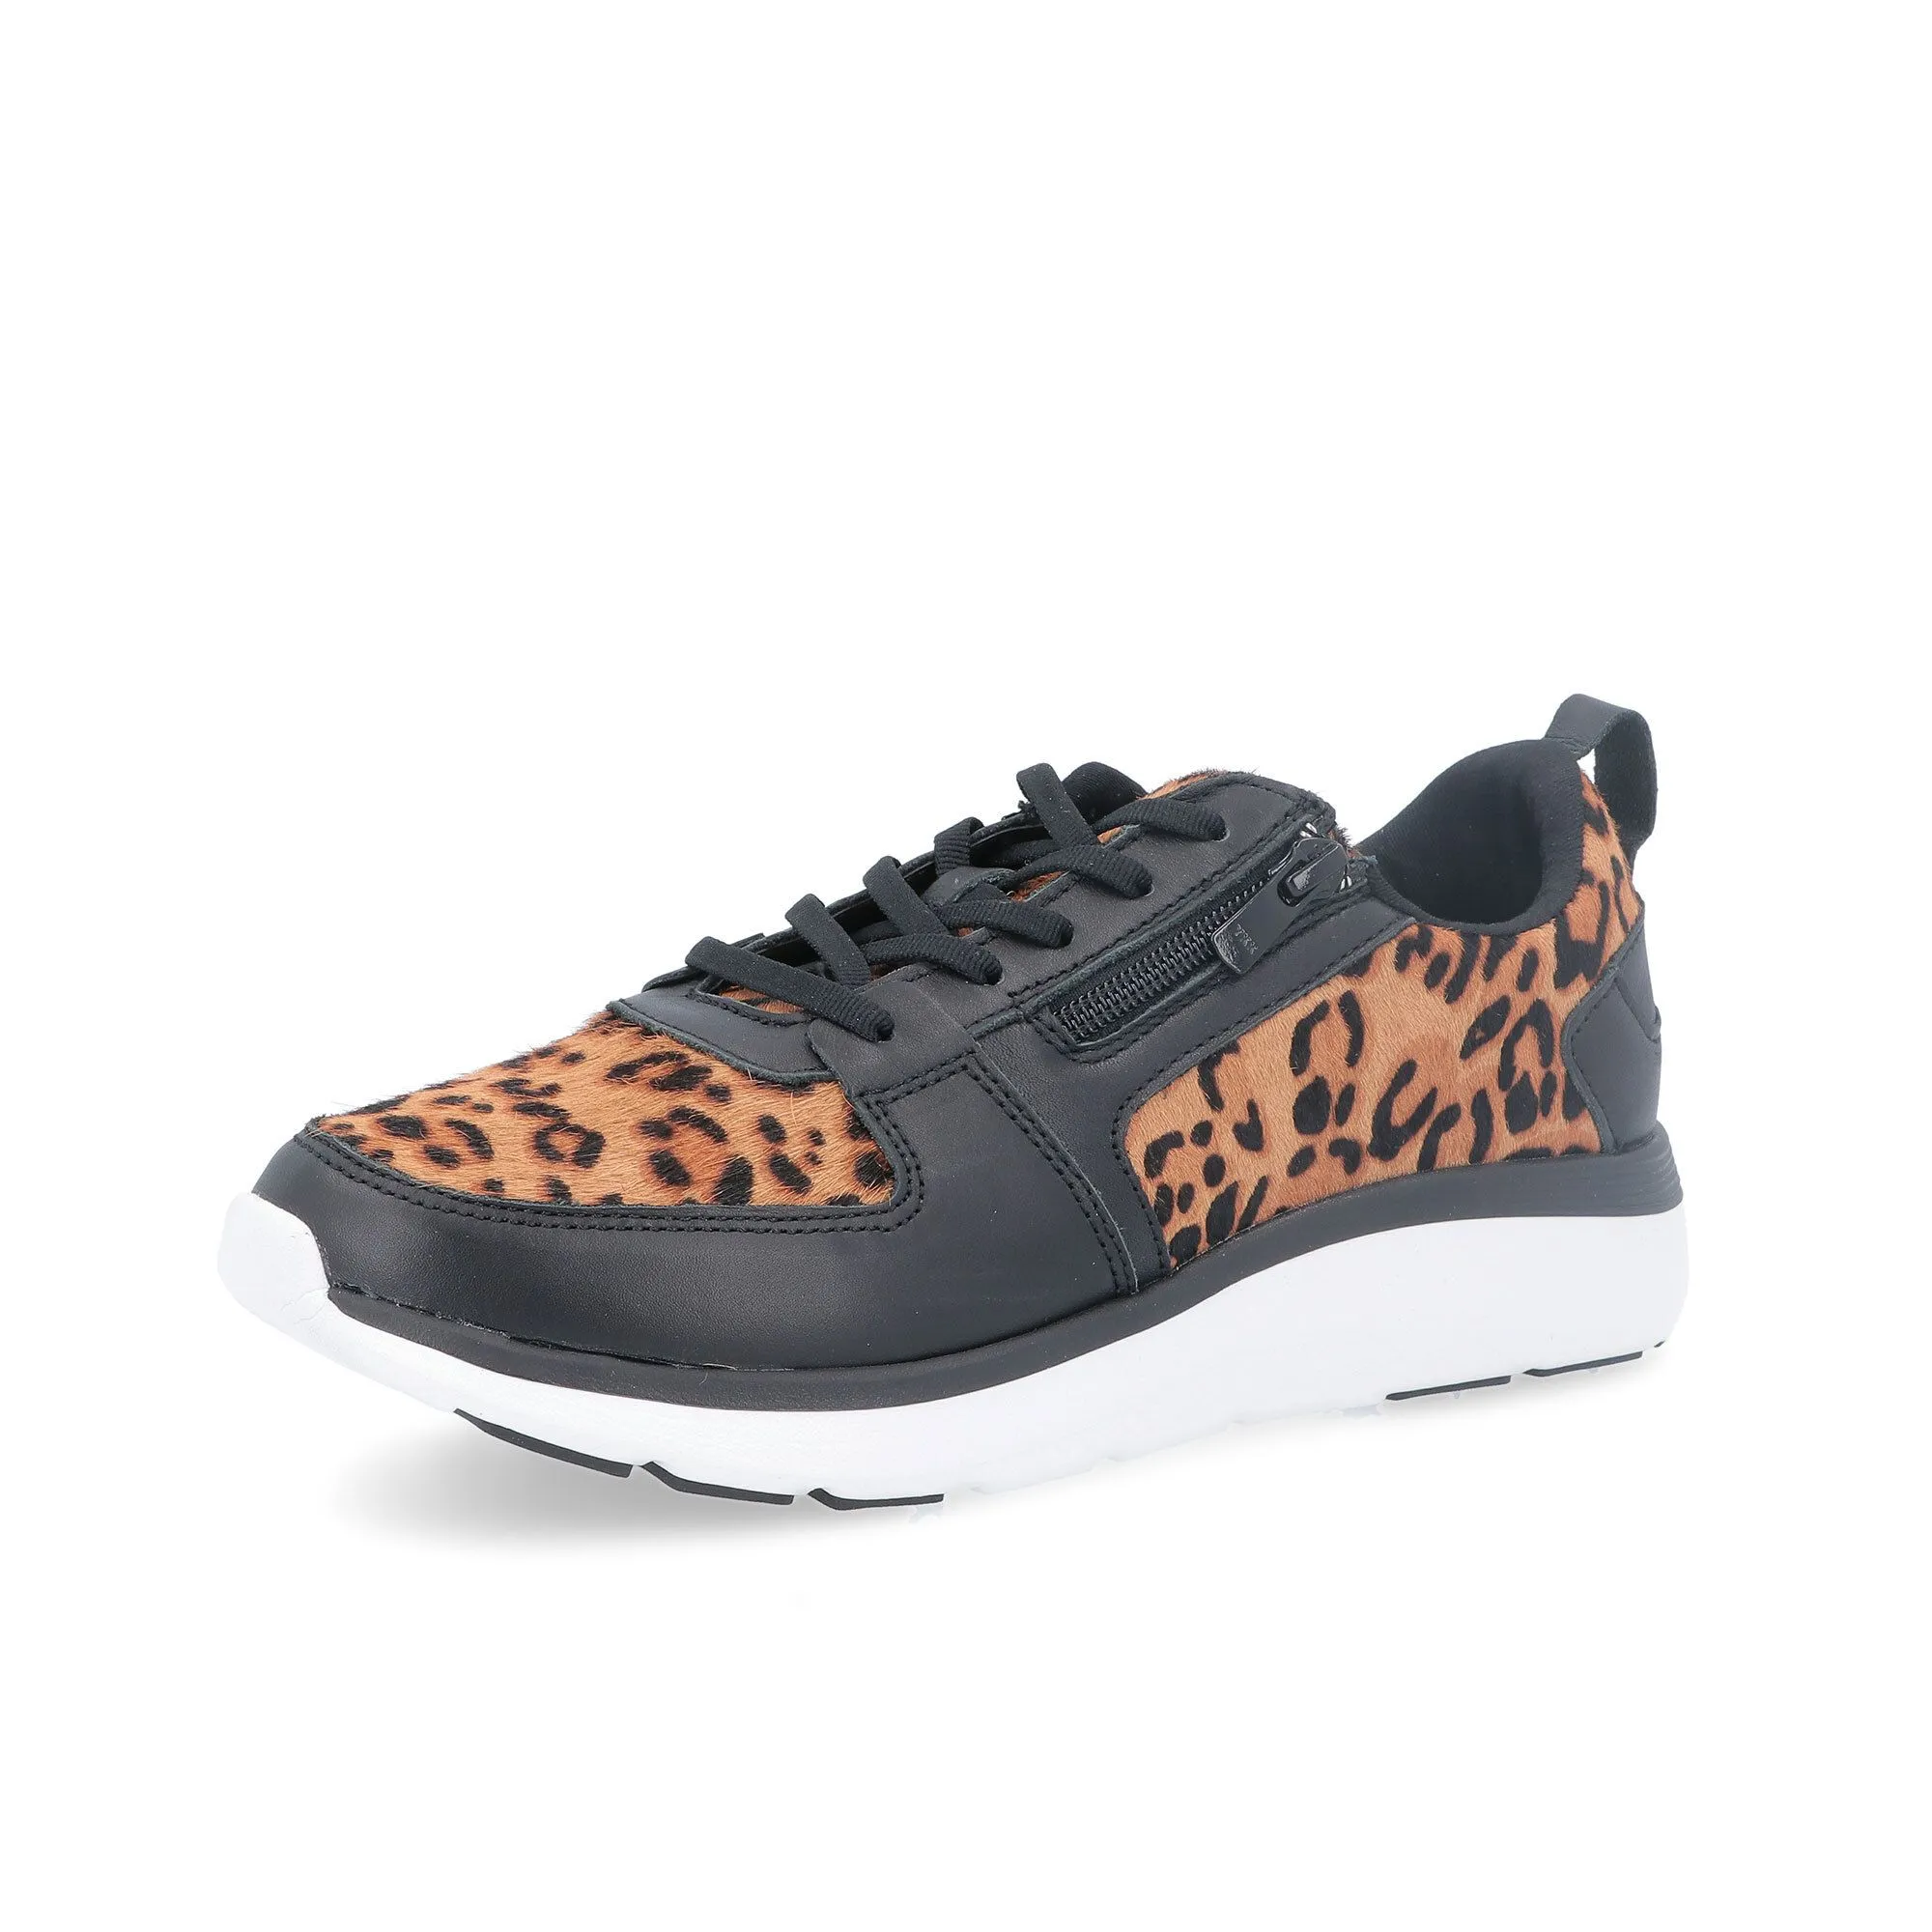 Sneaker in pelle leopardata con soletta ortotica